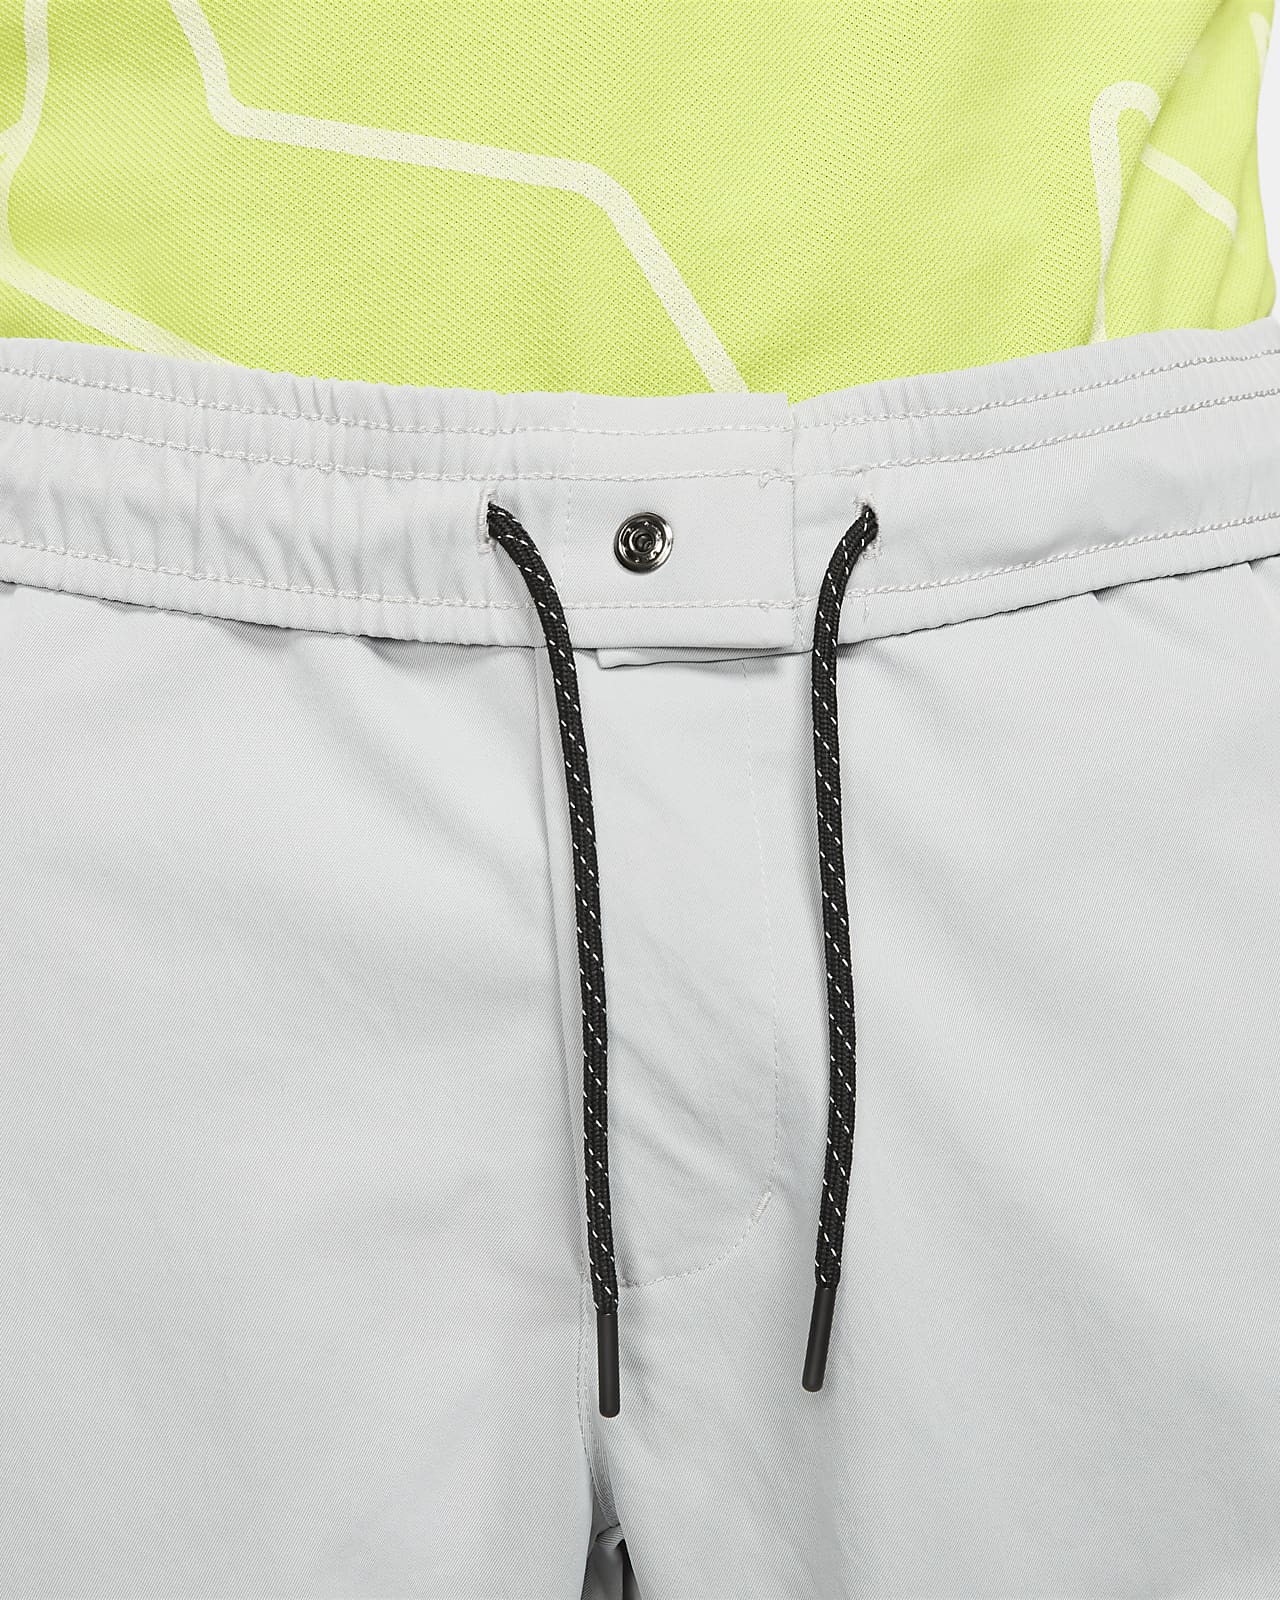 Nike Sportswear Tech Essentials Men's Unlined Commuter Pants. Nike.com